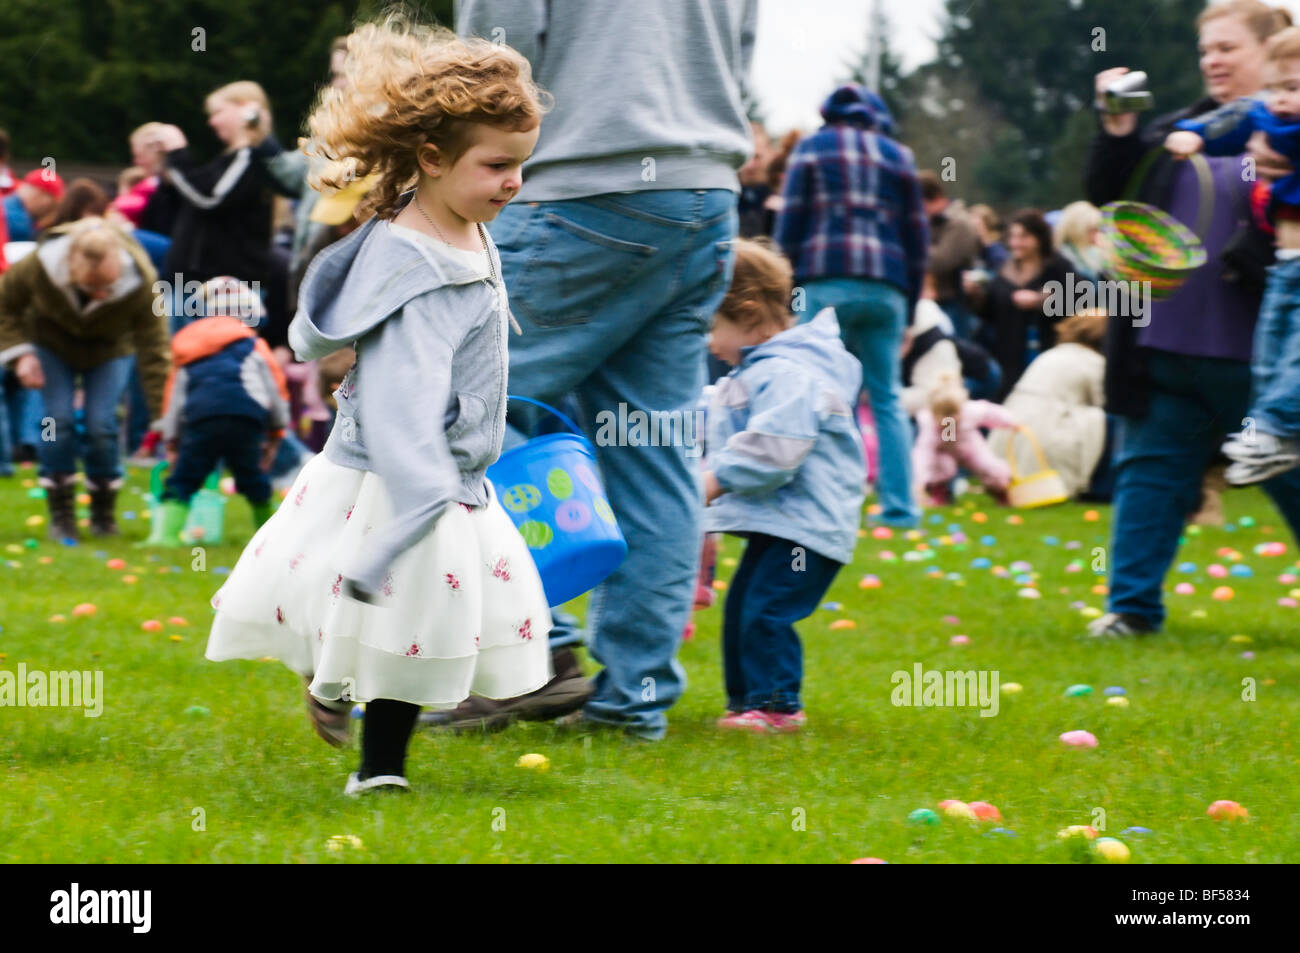 Ein Liebling kleines Mädchen läuft durch den Rasen Plastikeier zu sammeln, wie sie in einer Gemeinschaft Ostereiersuche teilnimmt. Stockfoto